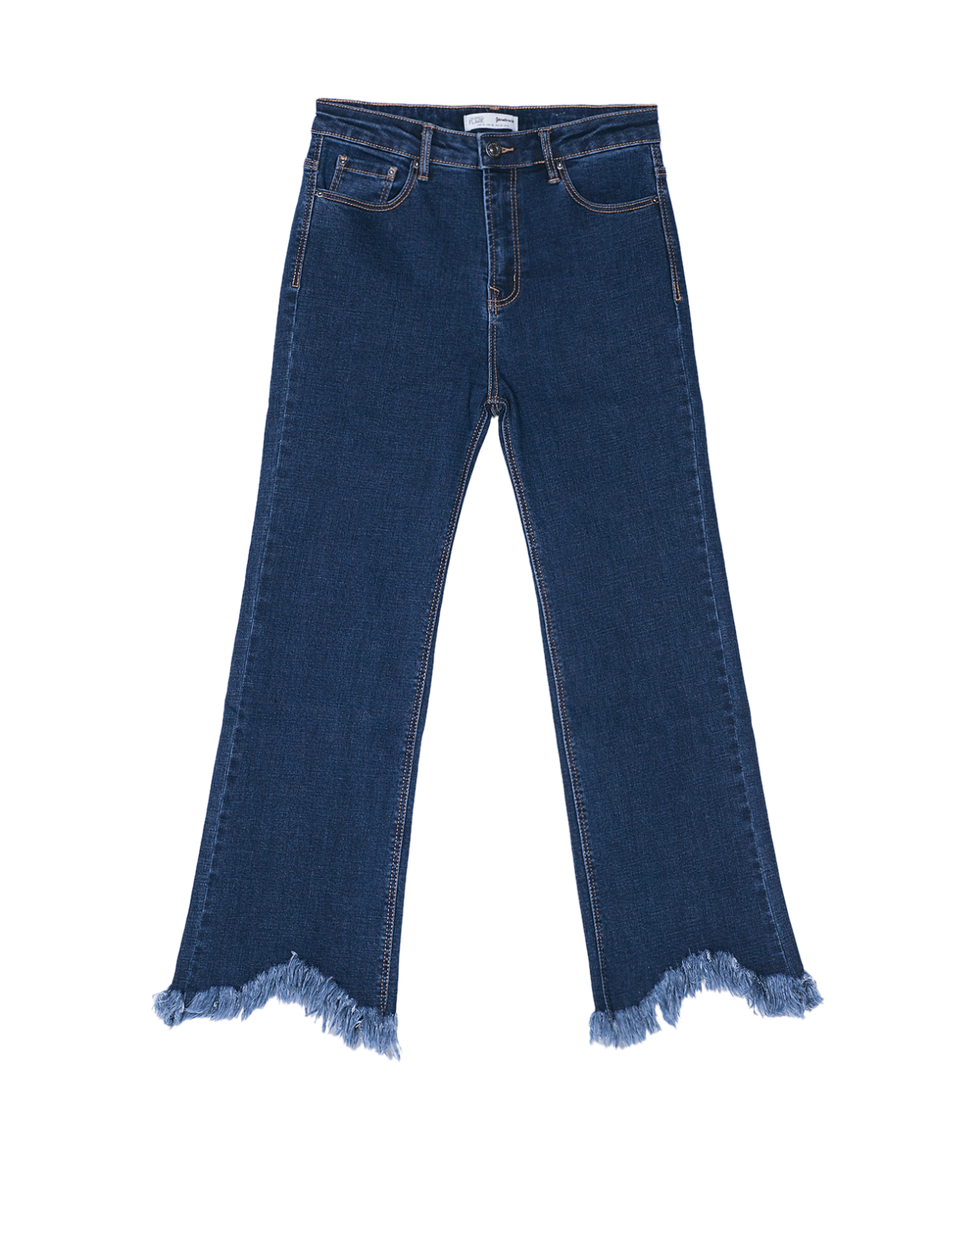 Ecco i jeans a vita alta di moda per la primavera estate 2017 che ti rendono più snella e alta.